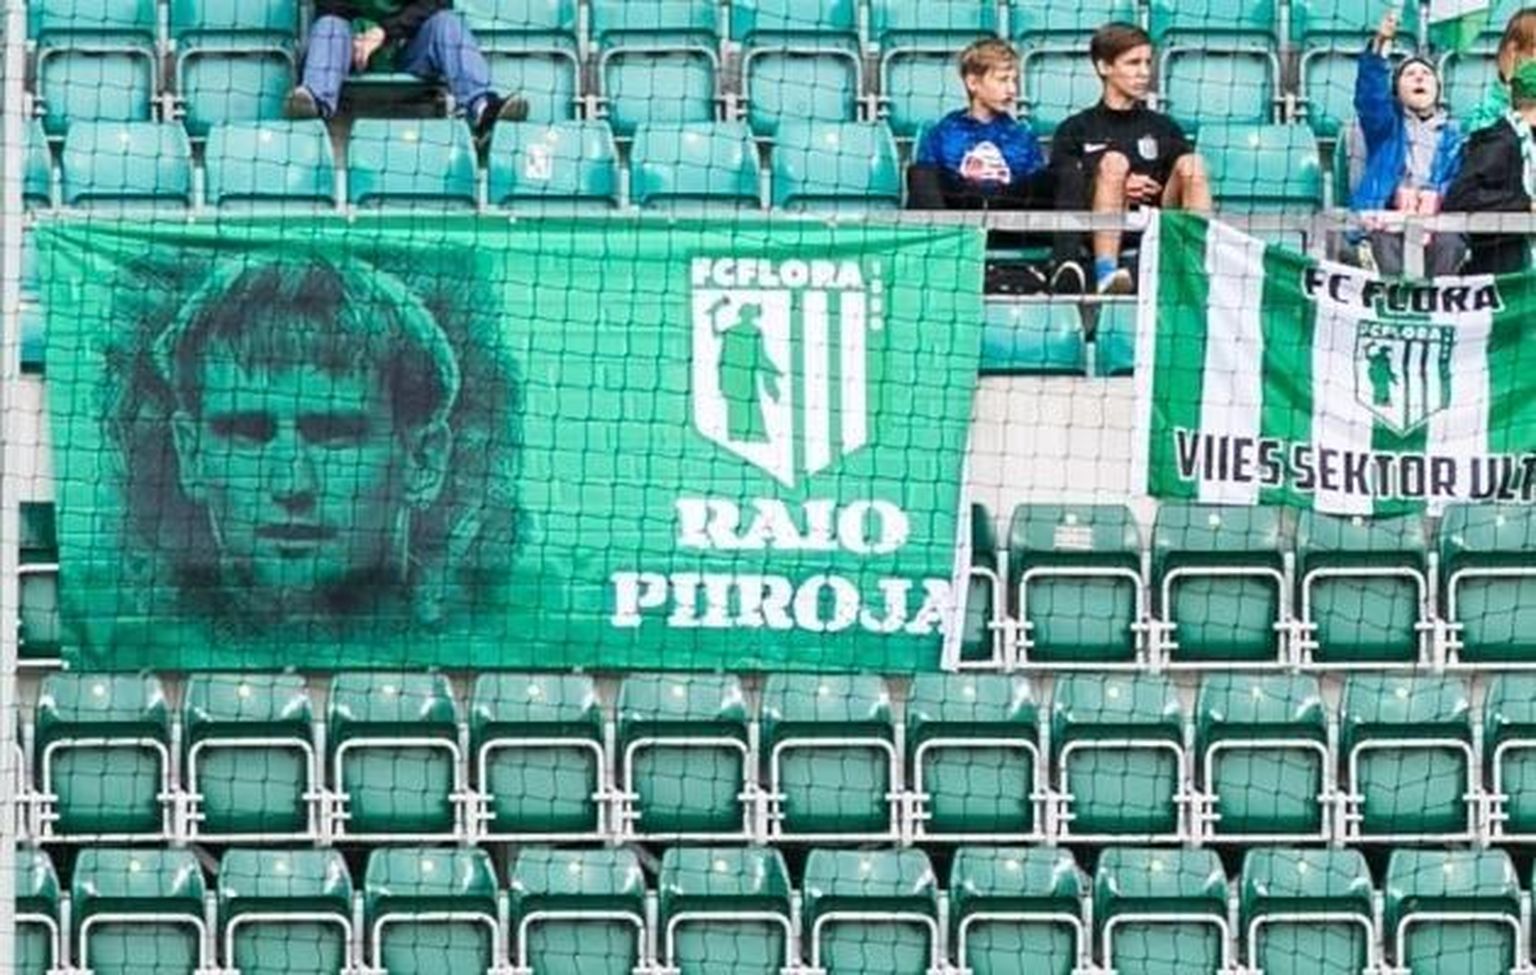 18 aastat tagasi FC Flora ridades Eesti meistriks jalgpallis tulnud Raio Piiroja teenis tänavu tšempionitiitli orienteerumises.